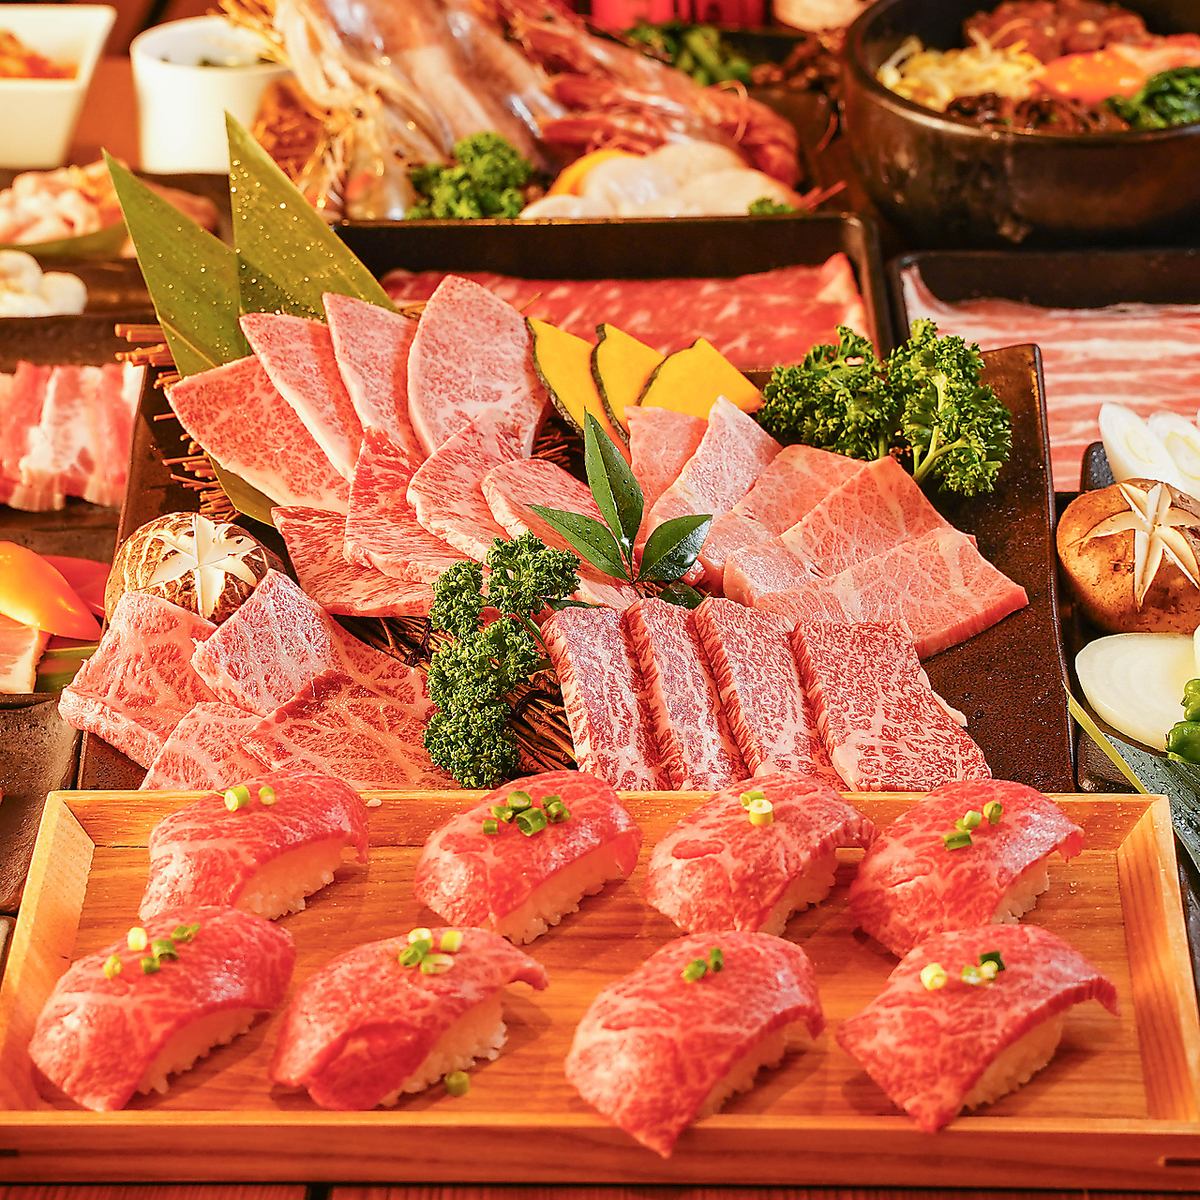 【焼肉】新宿NO.1 -焼肉 食べ放題- 国産和牛A5ランクで贅沢を♪